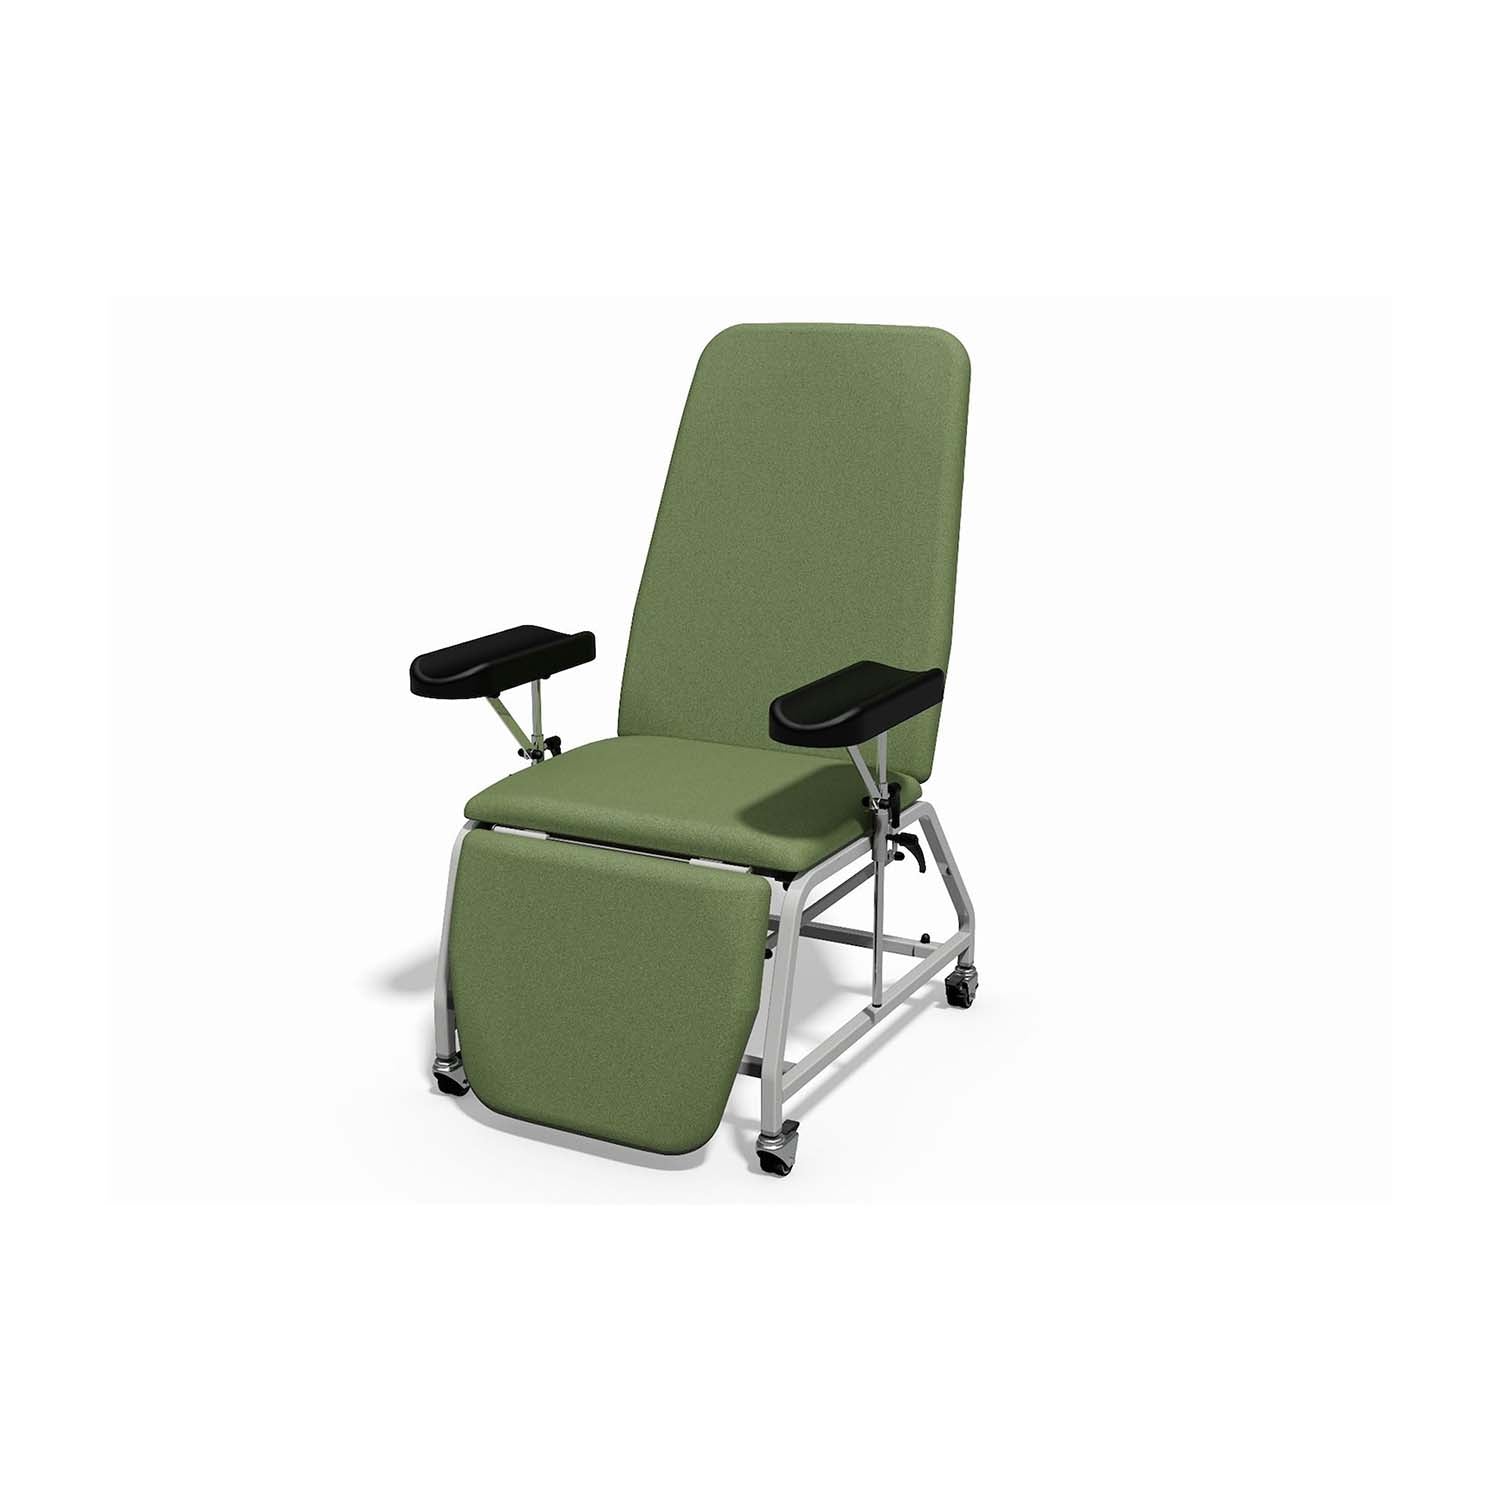 Plinth 2000 Model 113B Reclining Phlebotomy Chair | Wasabi